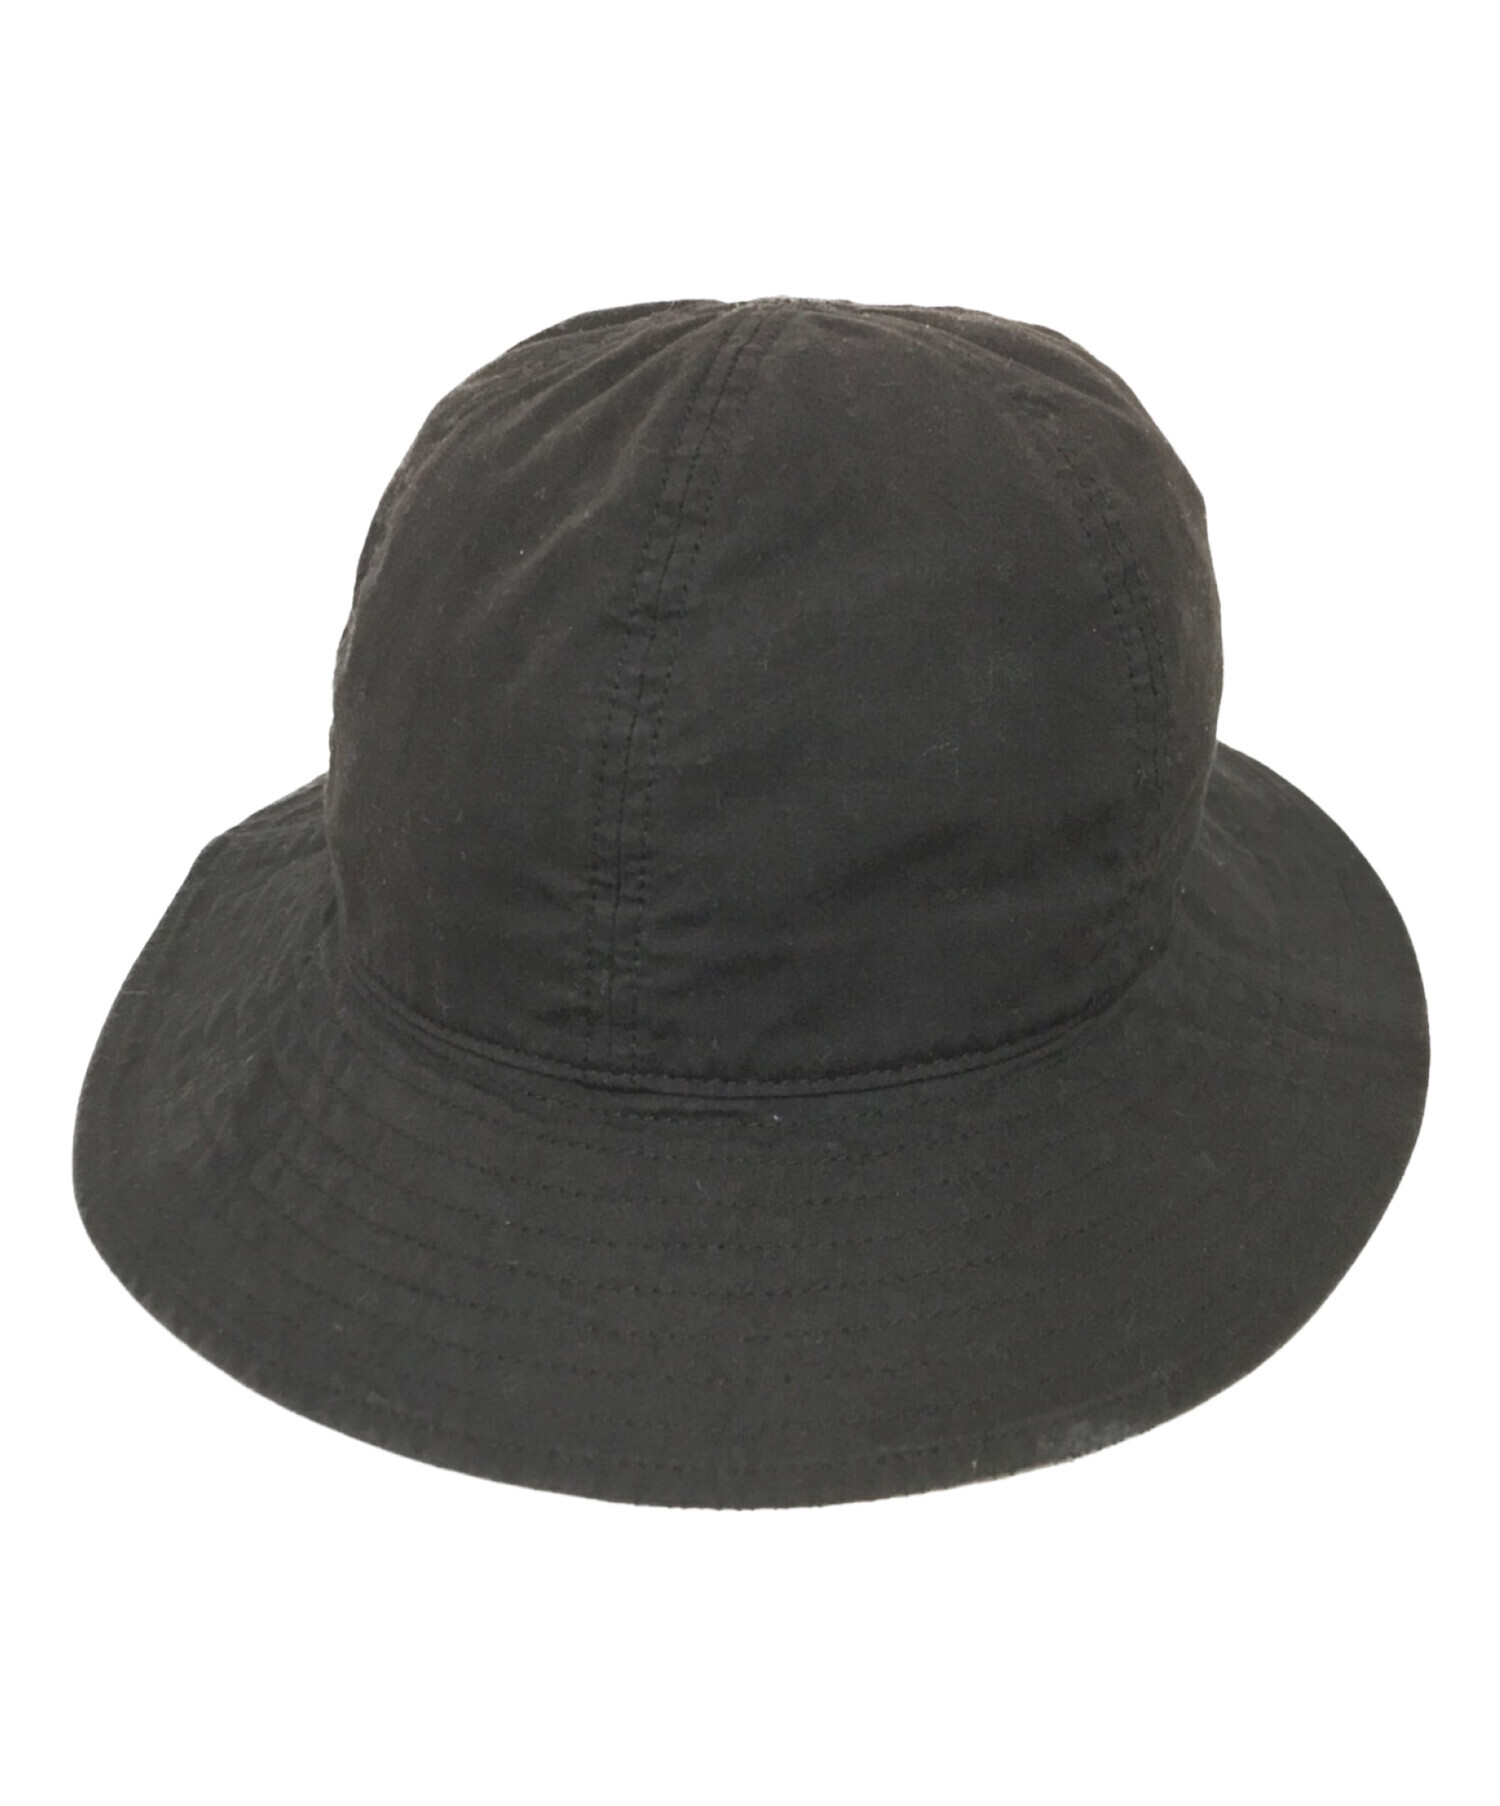 MHL (エムエイチエル) 帽子 ブラック サイズ:F